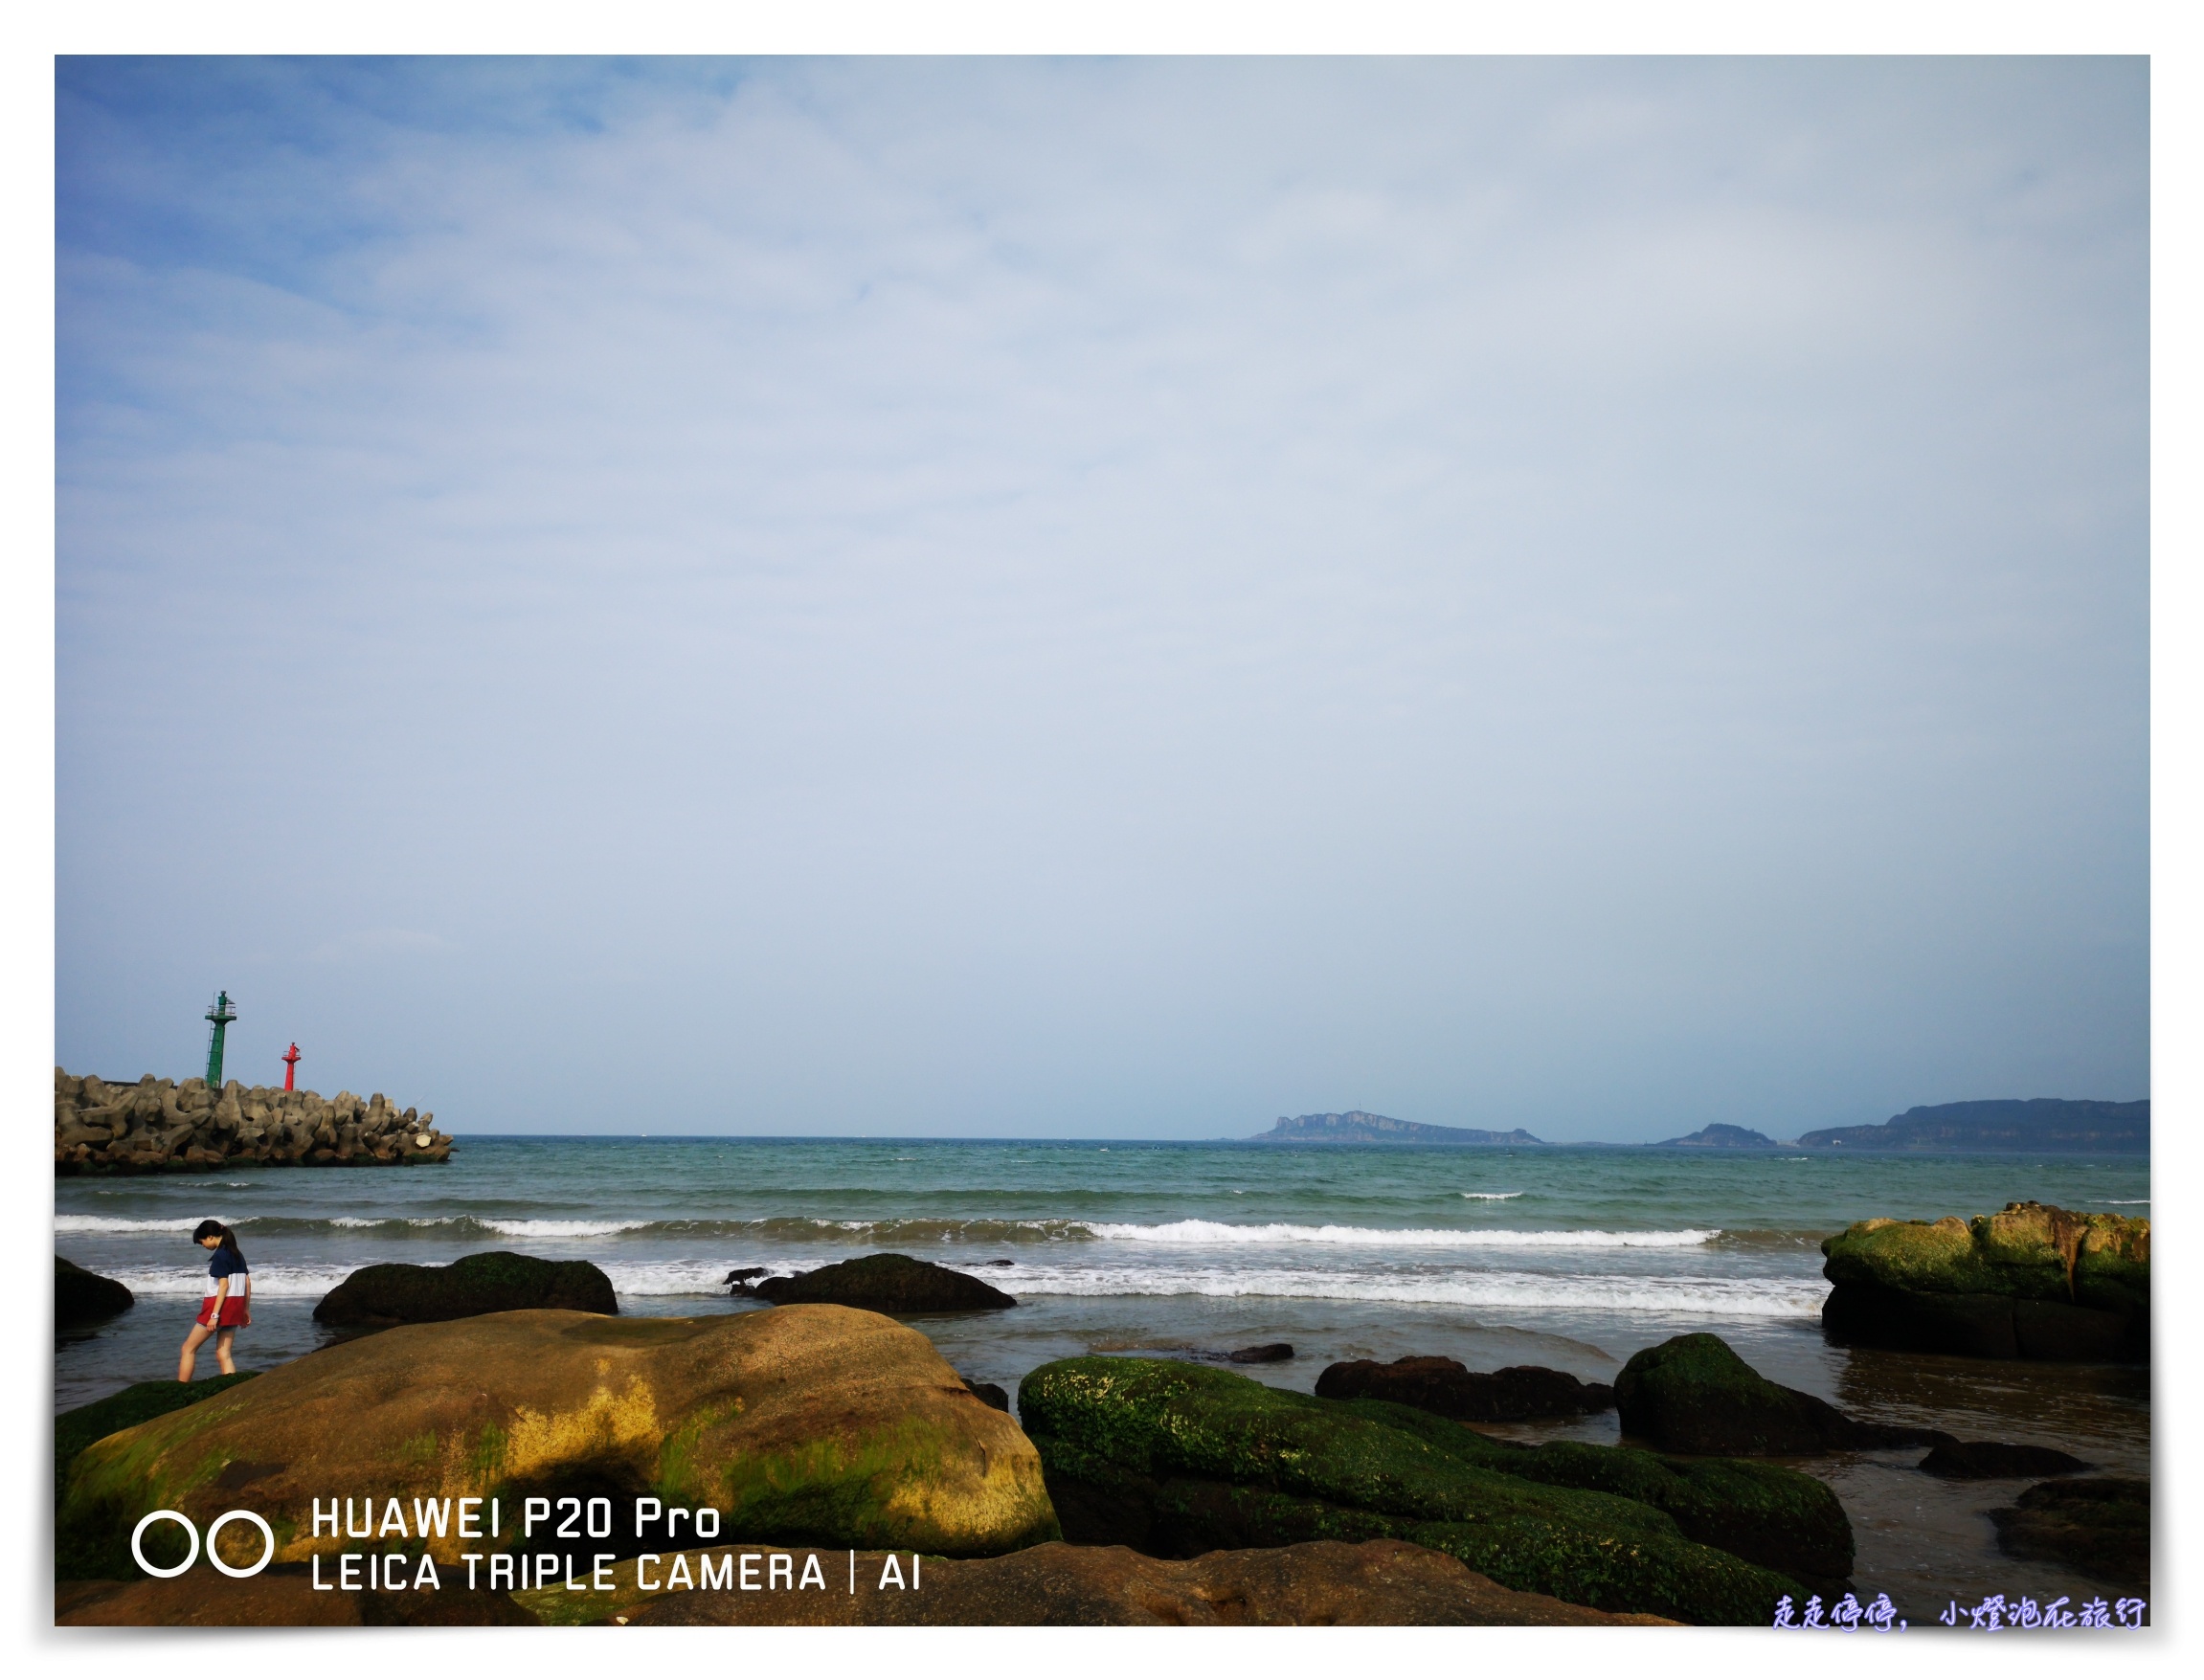 台北秘境｜金山水尾漁港神祕海岸～陪伴與旅行，是生命最美好的回憶～親子小旅行Huawei P20 Pro全紀錄～